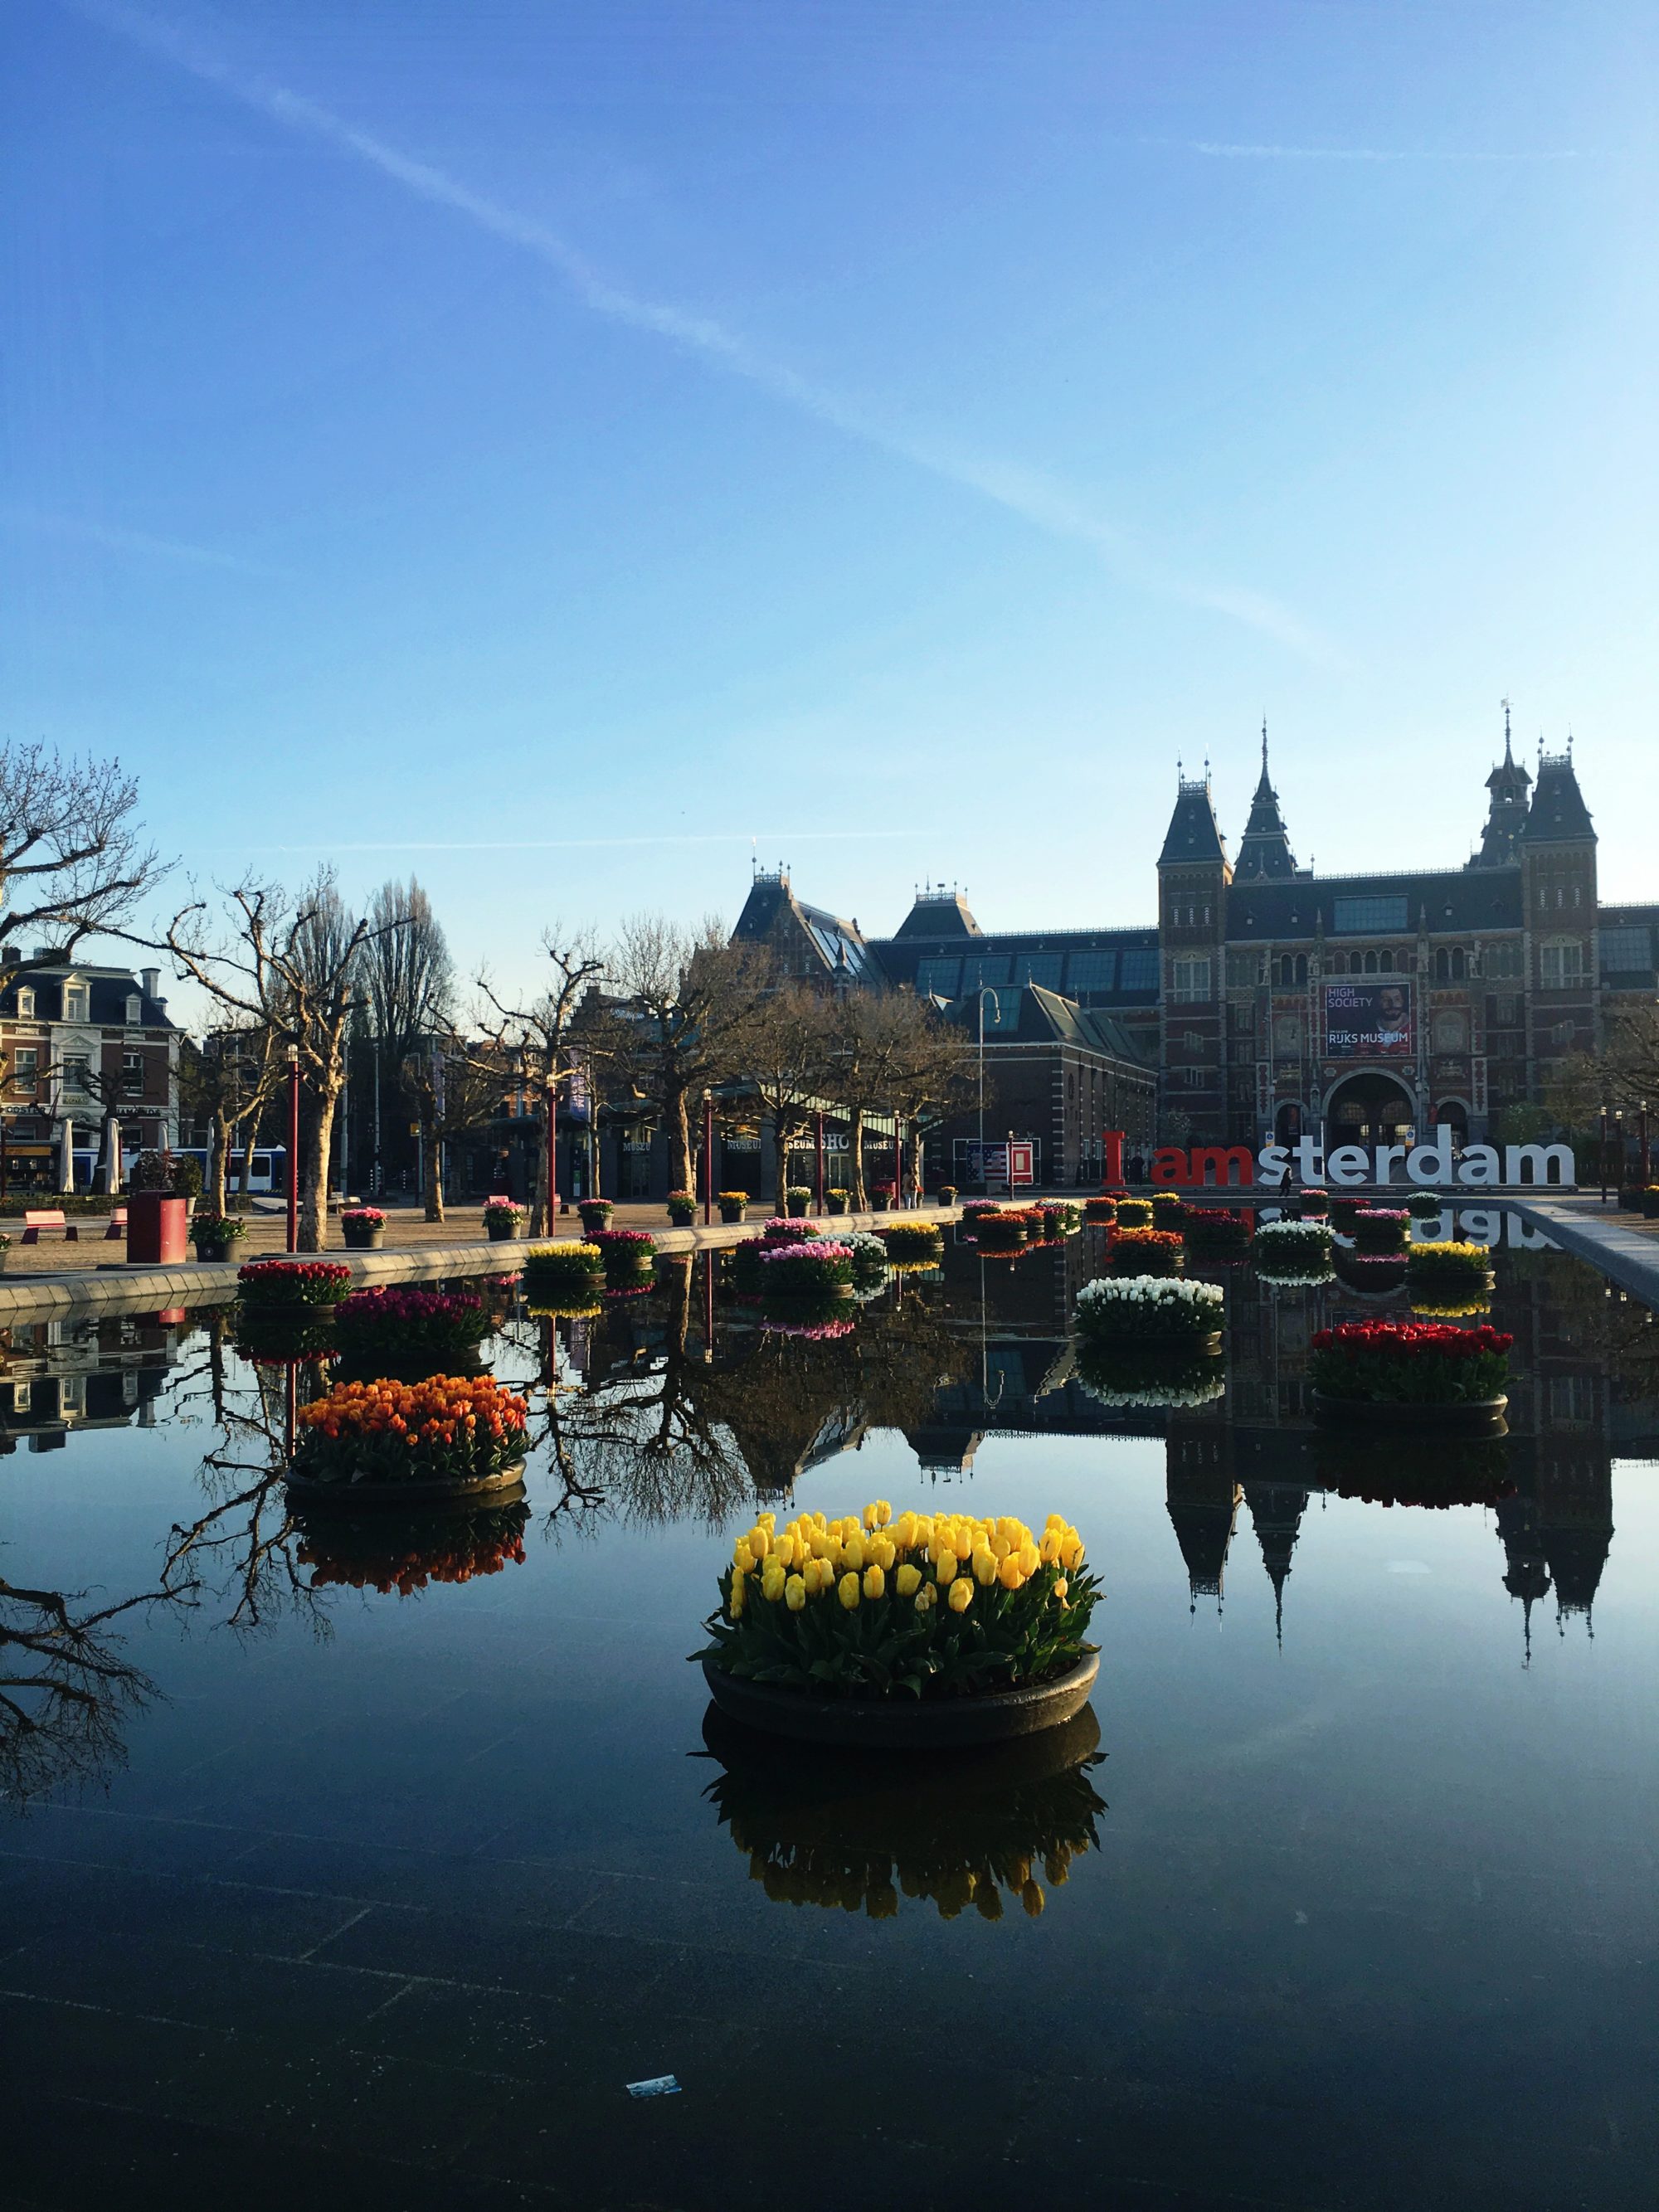 Voor iedere Amsterdammer een tulp: Tulp Festival 2018